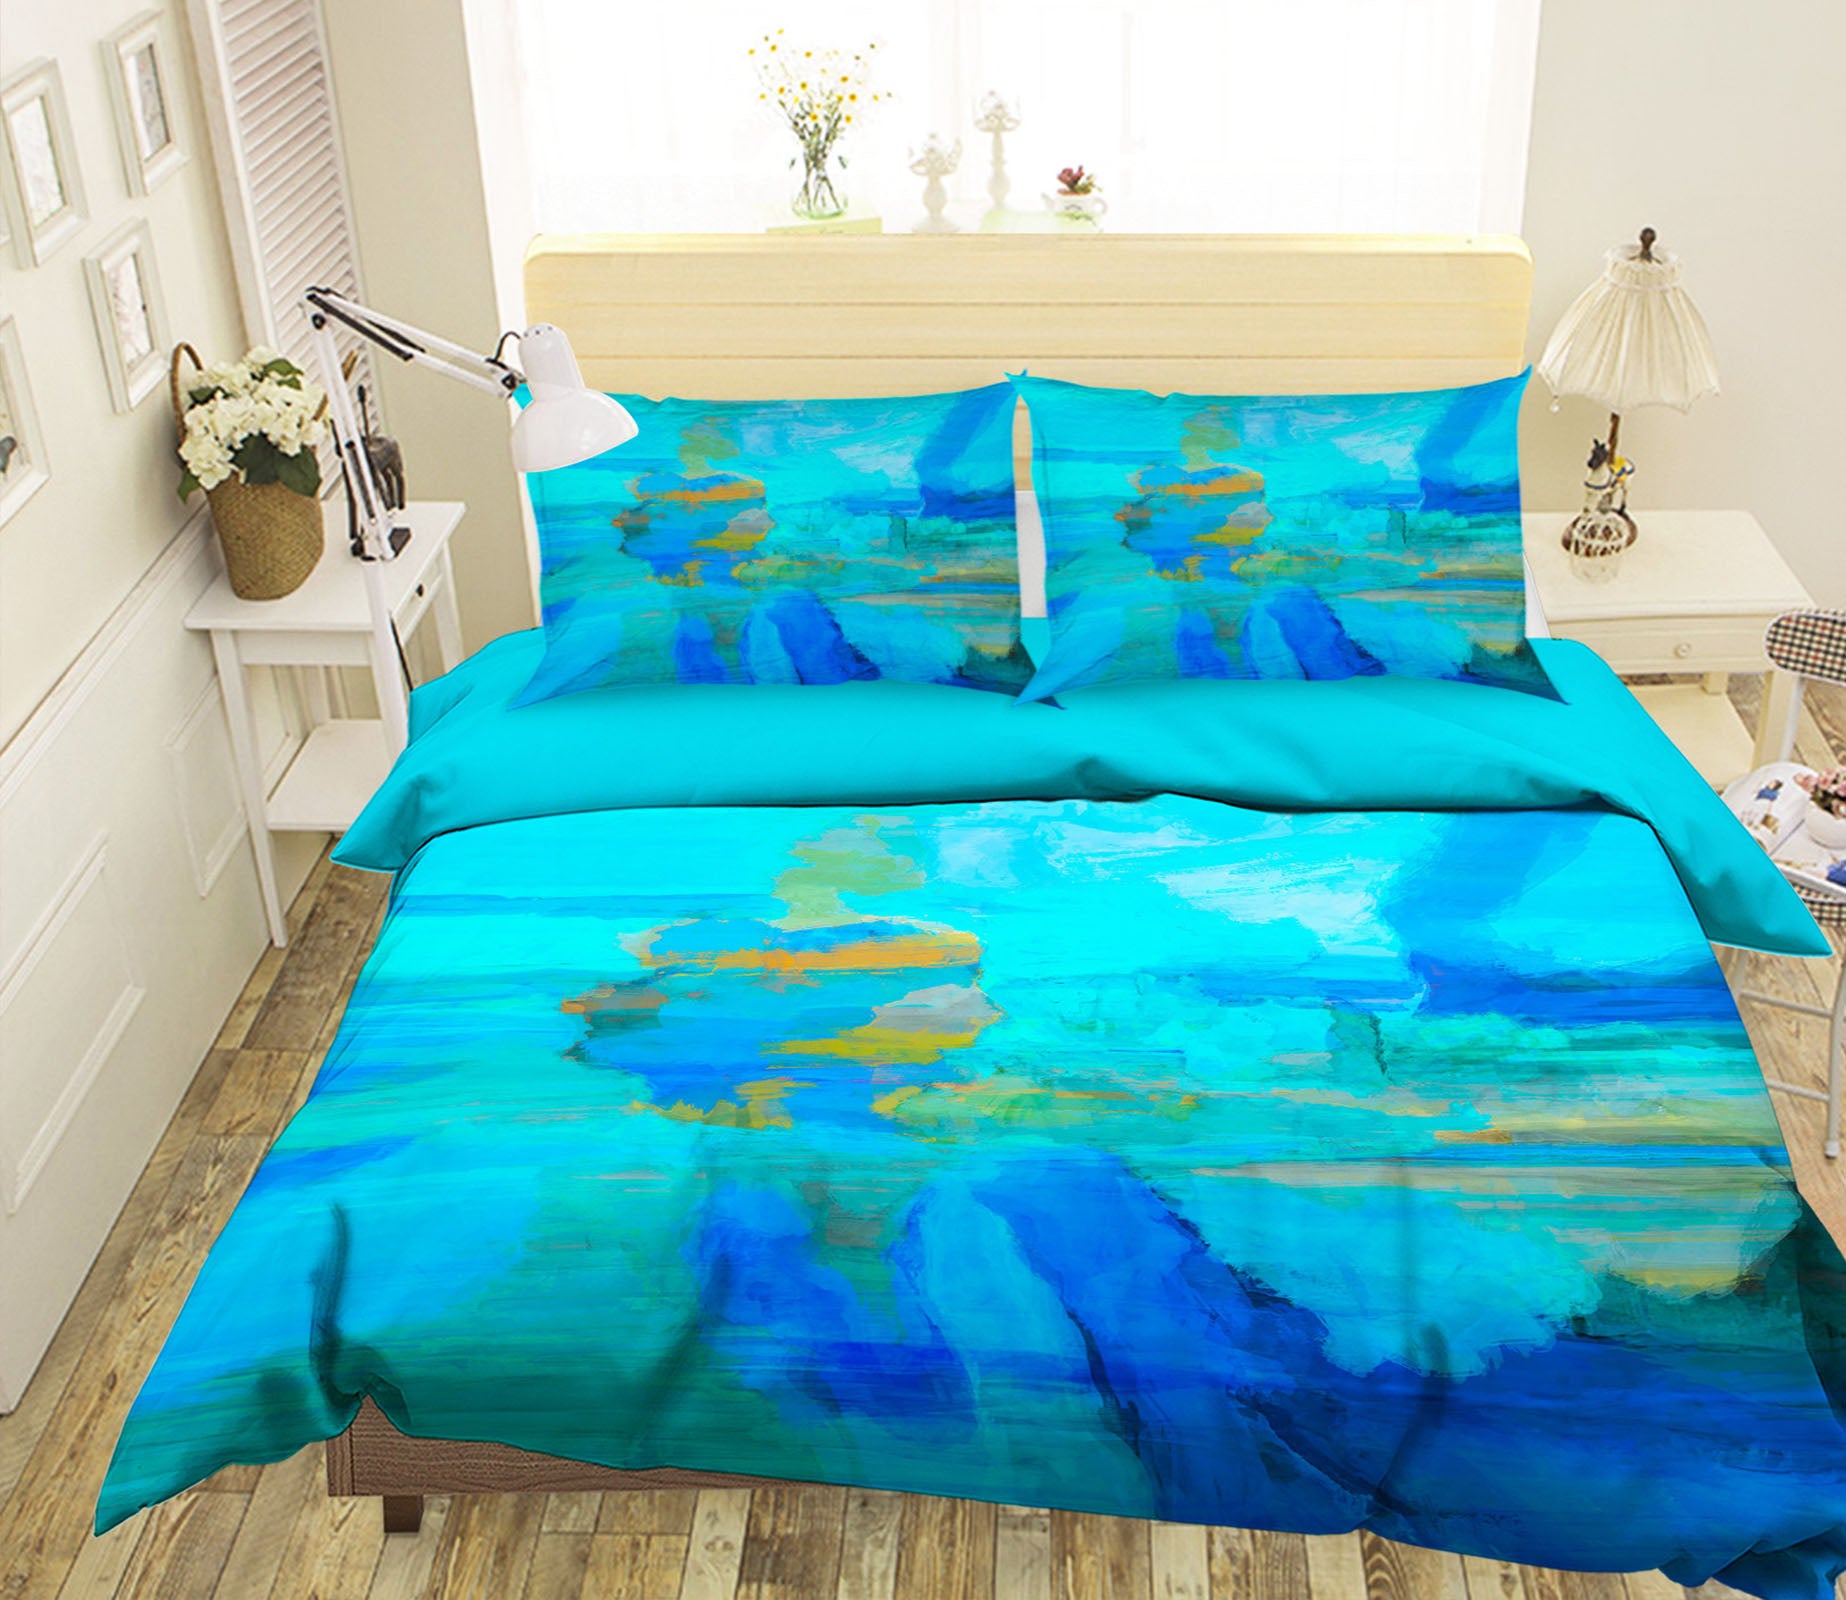 3D Underwater World 2112 Michael Tienhaara Bedding Bed Pillowcases Quilt